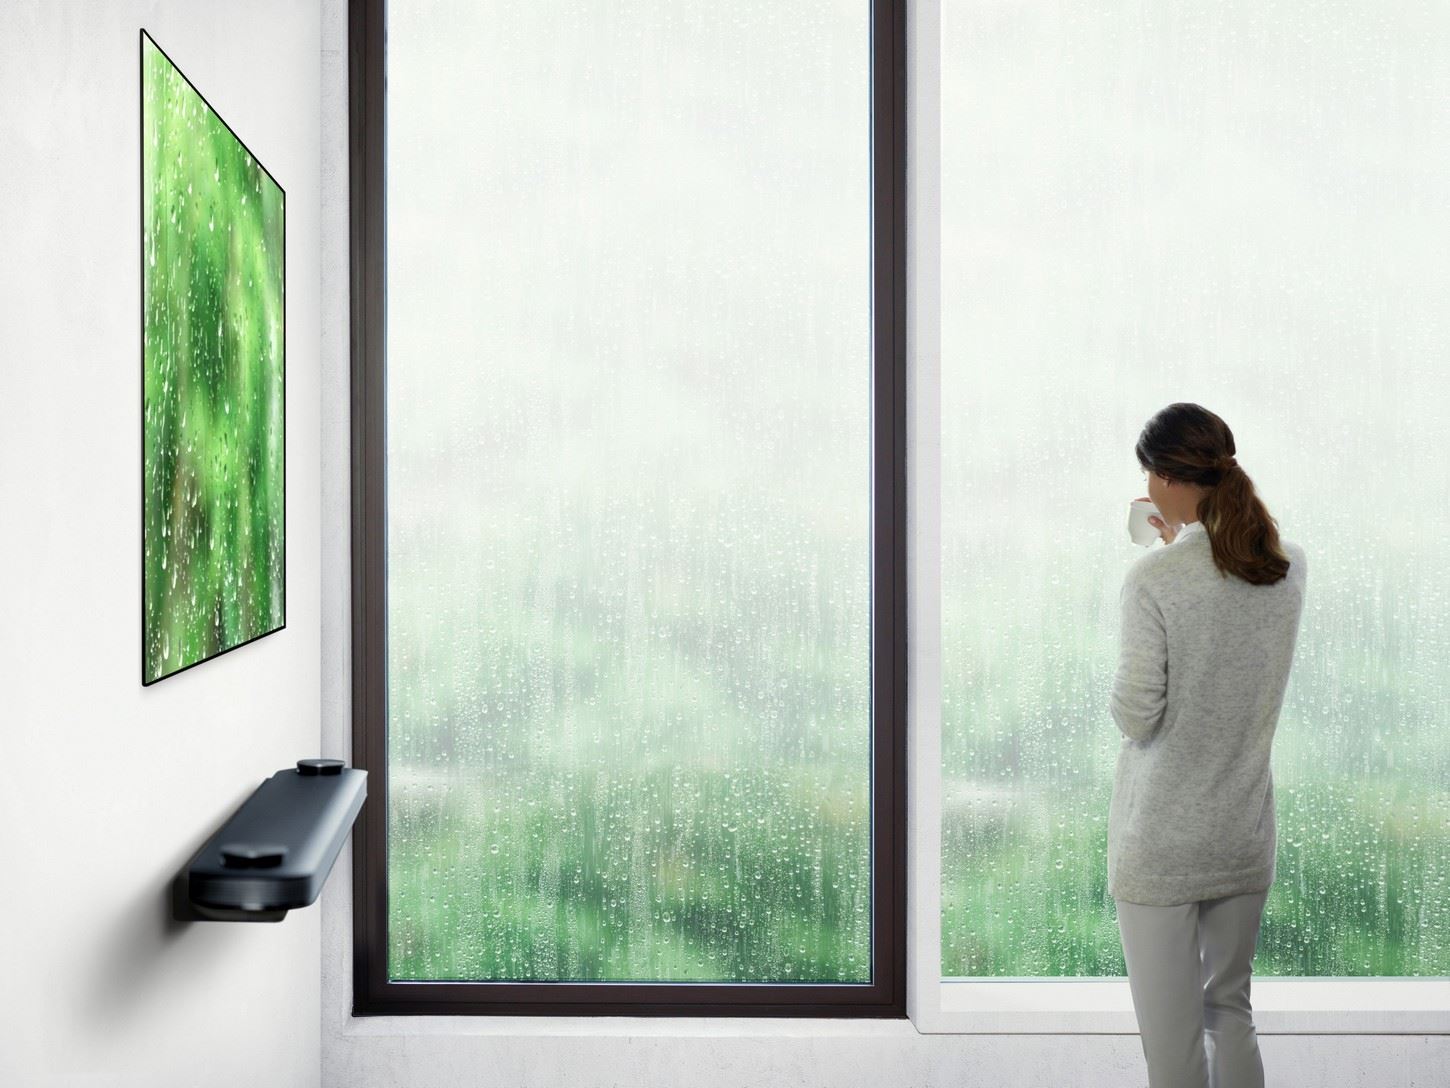 Zapomnij wszystko co wiesz o telewizorach – LG otwiera nowy rozdział na rynku telewizorów OLED